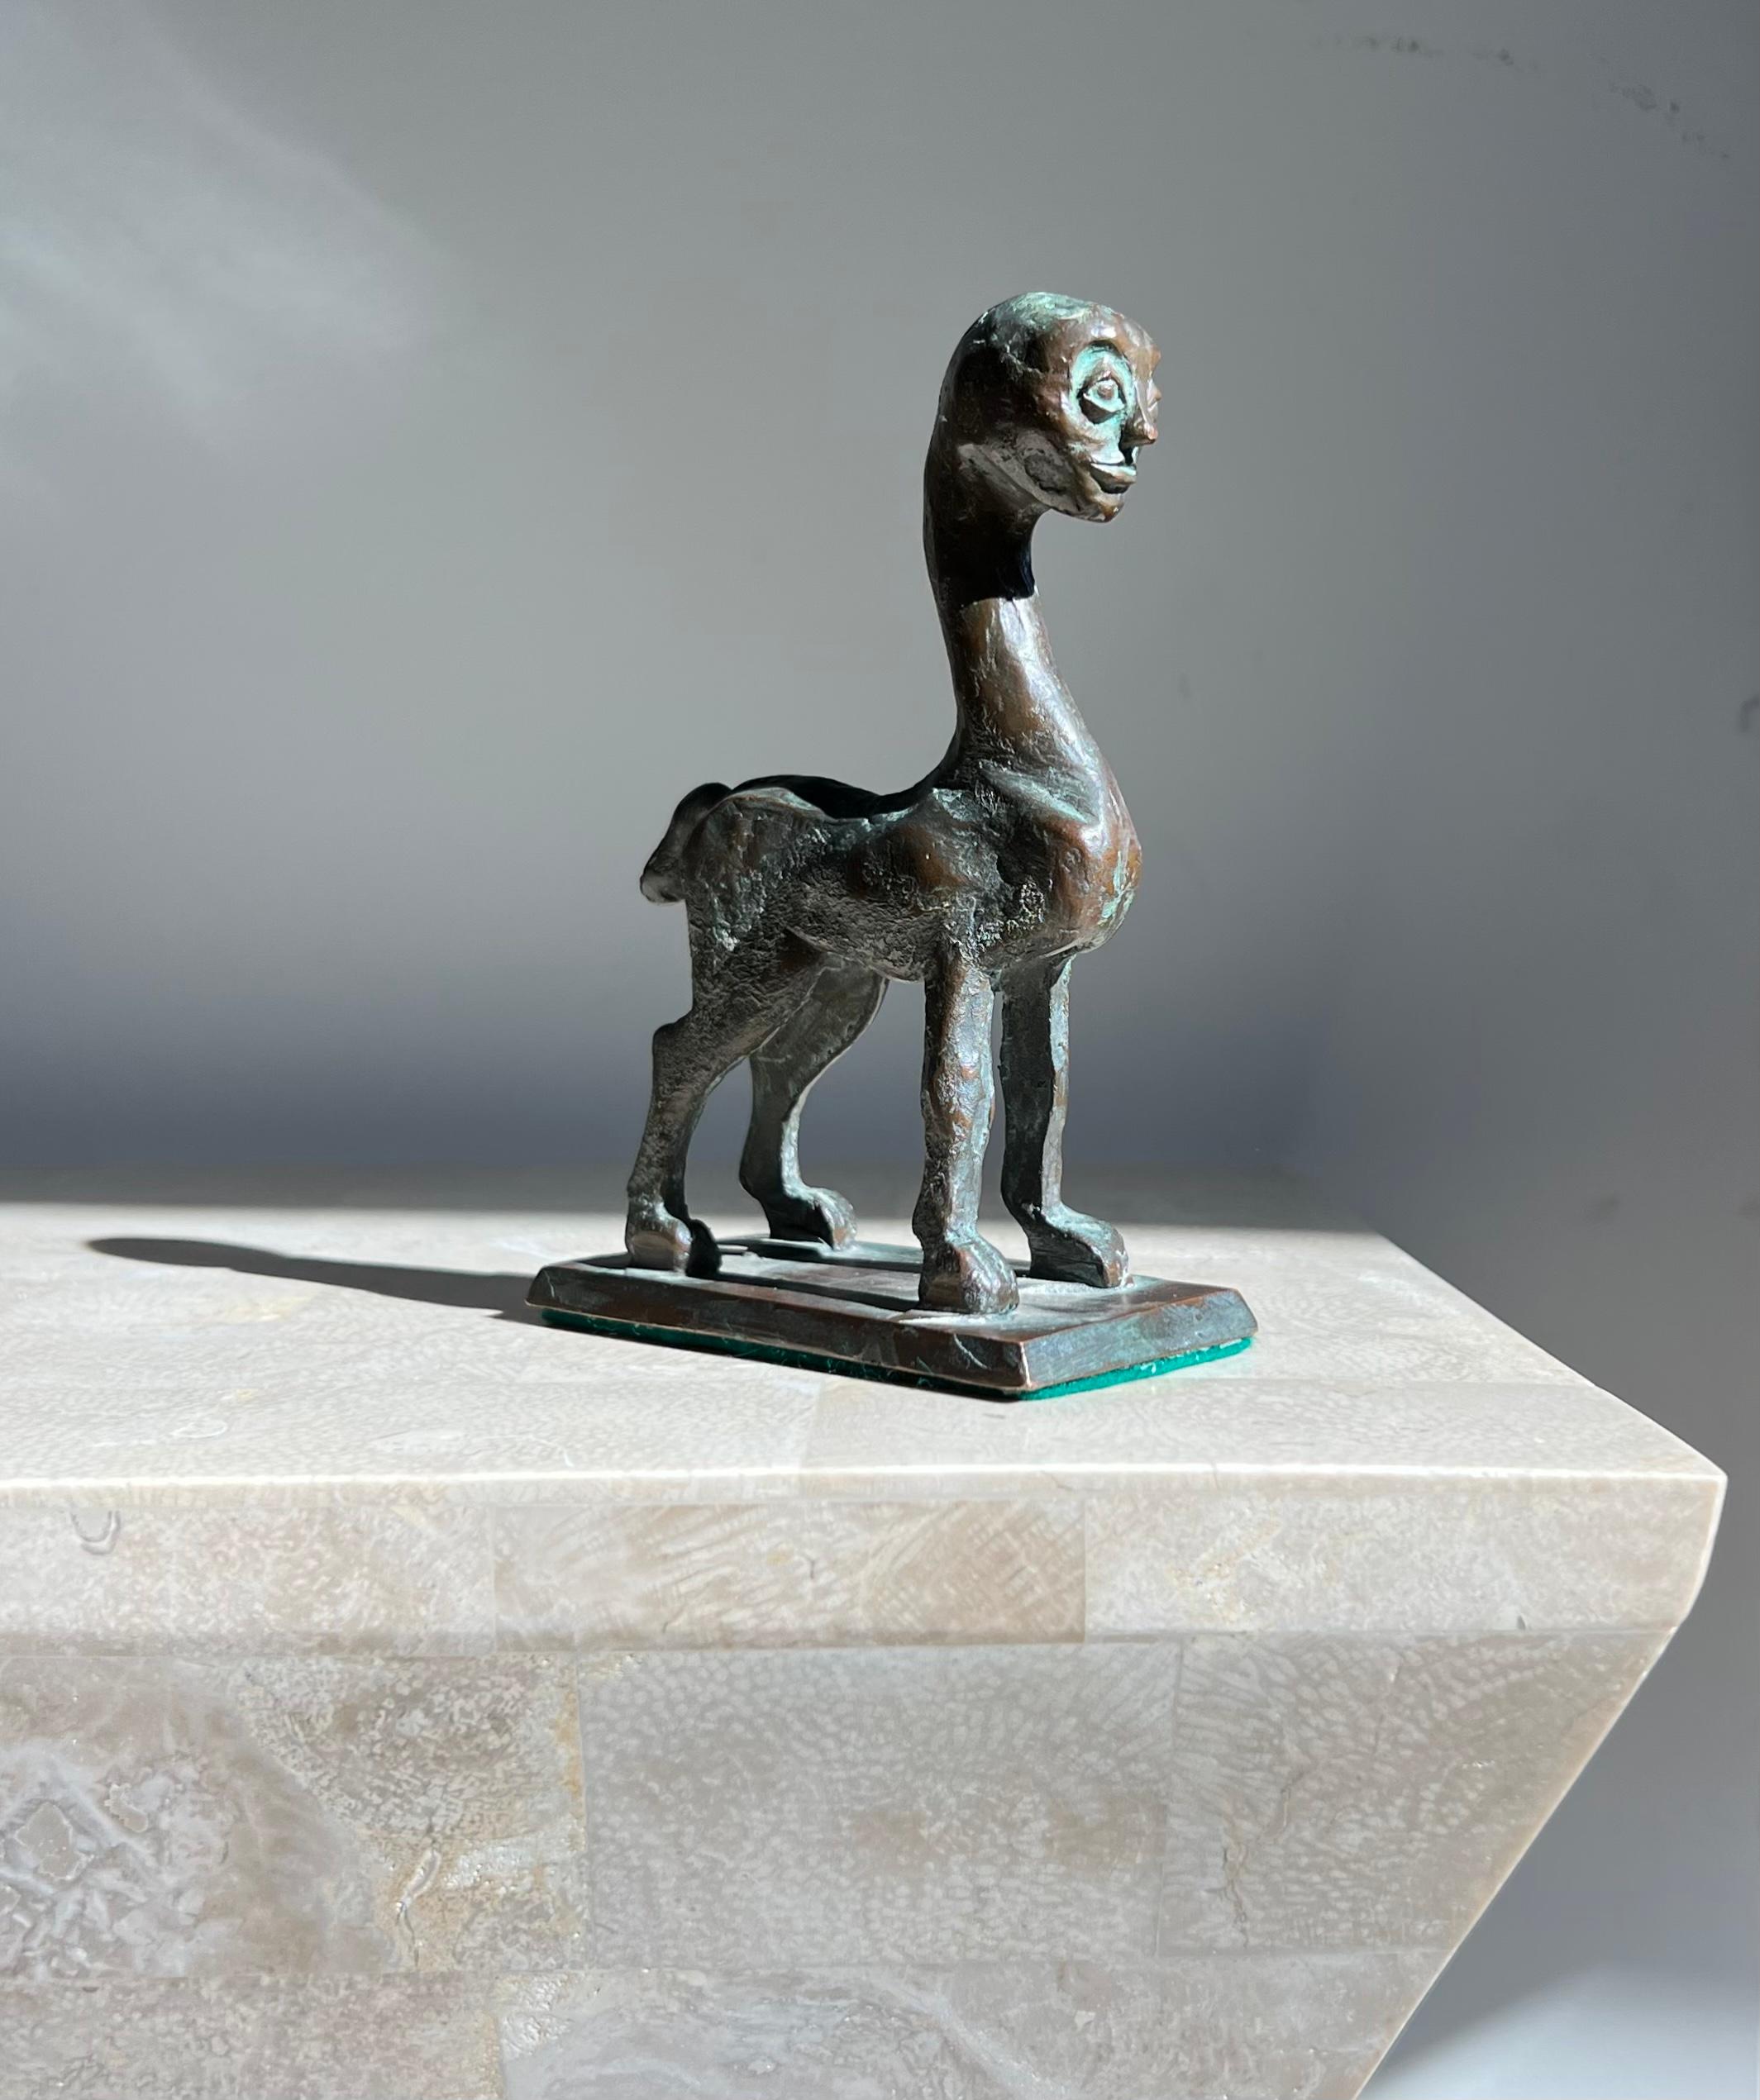 Une rare et précieuse sculpture moderniste d'un centaure, 20ème siècle. Sculpté à la main en bronze massif avec une base feutrée. D'après Picasso, avec une influence évidente de Giacometti et Henry Moore, cette pièce n'est pas signée, mais elle est